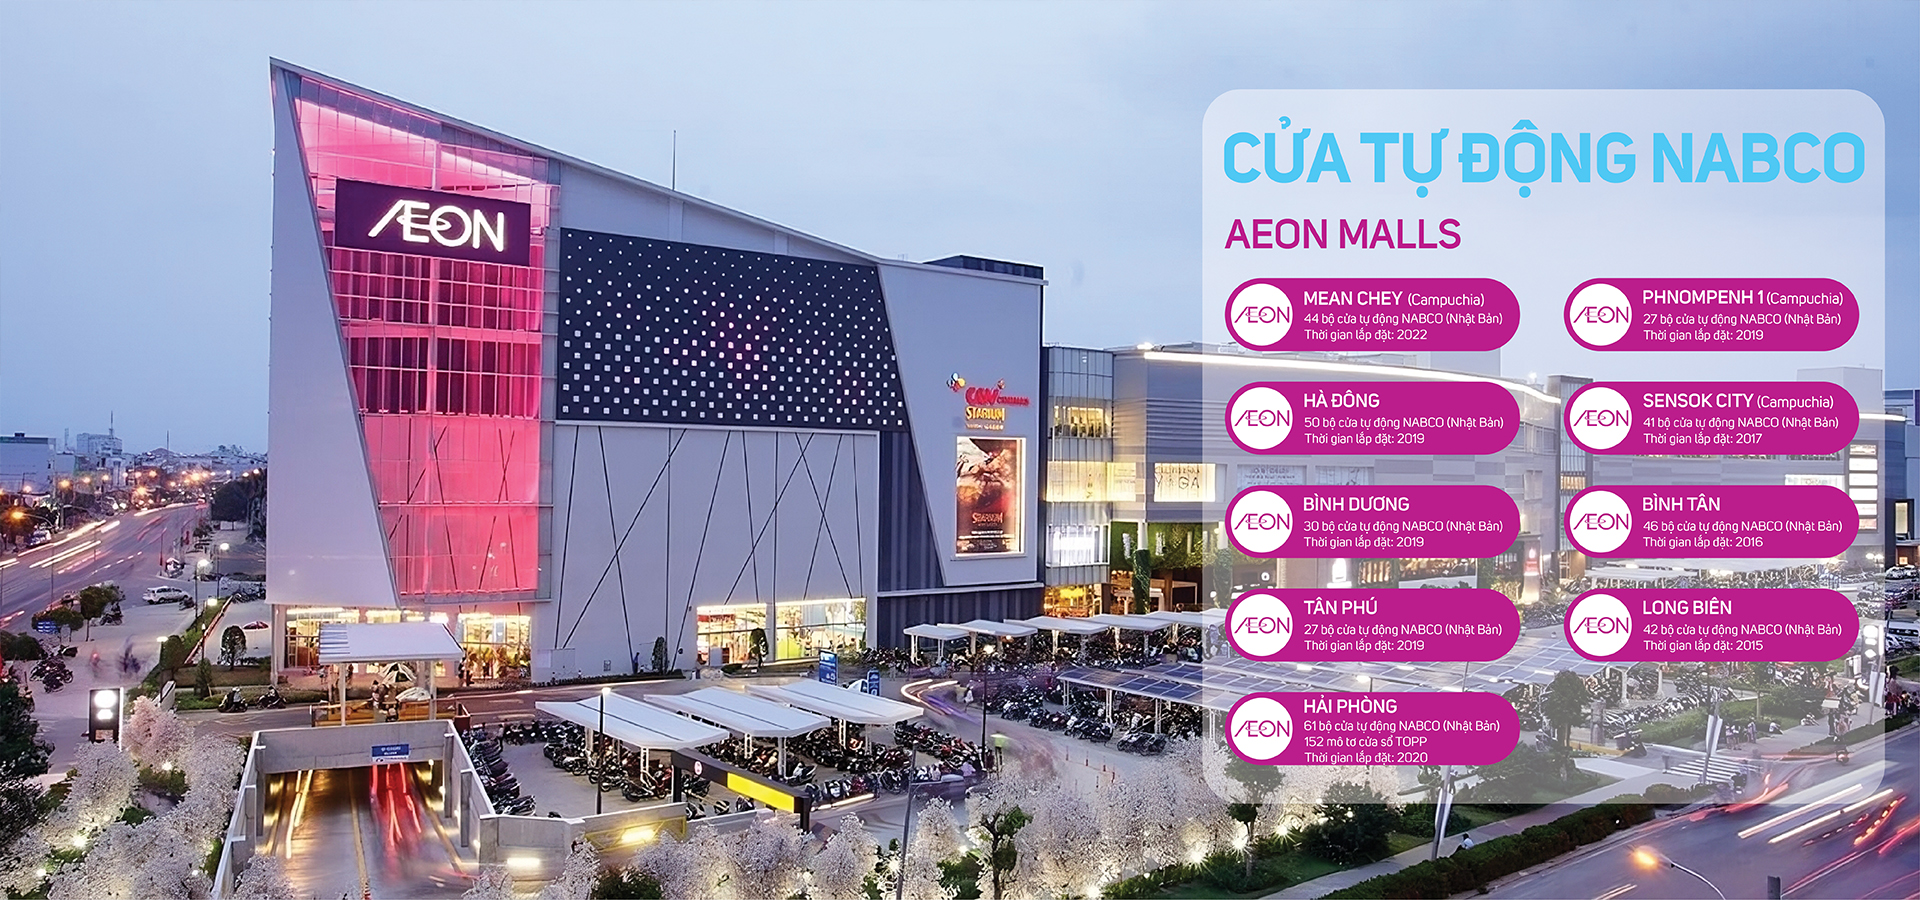 Aeon Mall sử dụng cửa tự động Nabco tại Việt Nam